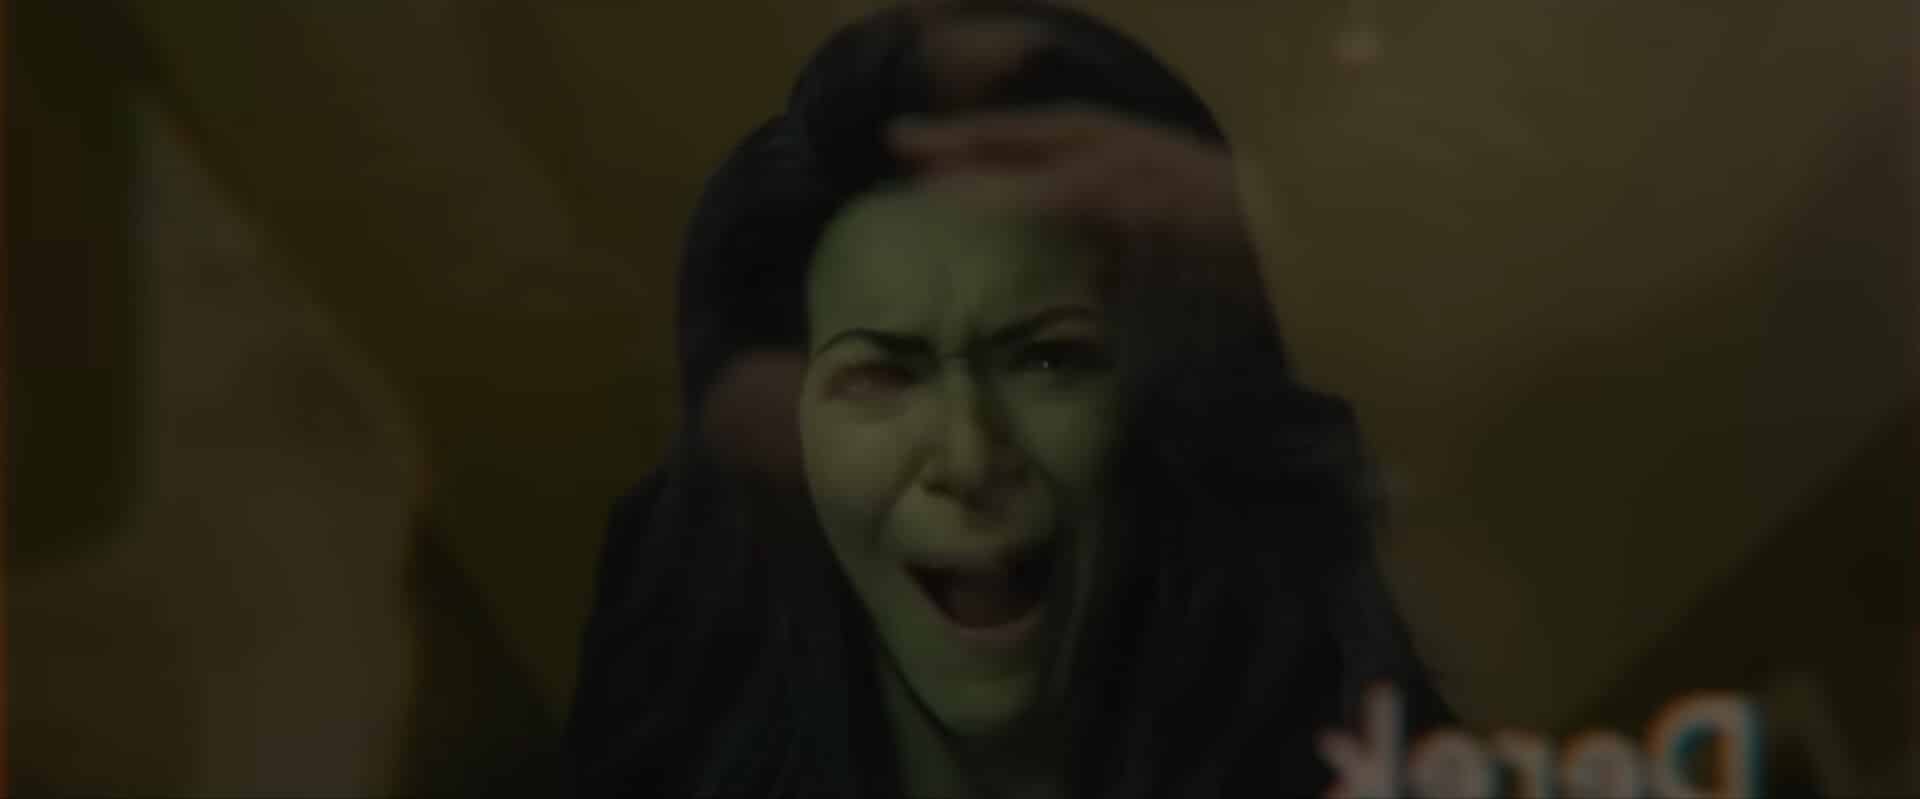 She-Hulk-Trailer CGI Jennifer Walters Qualitätsprobleme deuten auf Probleme bei der Behandlung von MCU Marvel Cinematic Universe mit visuellen Geräten und visuellen Effekten hin